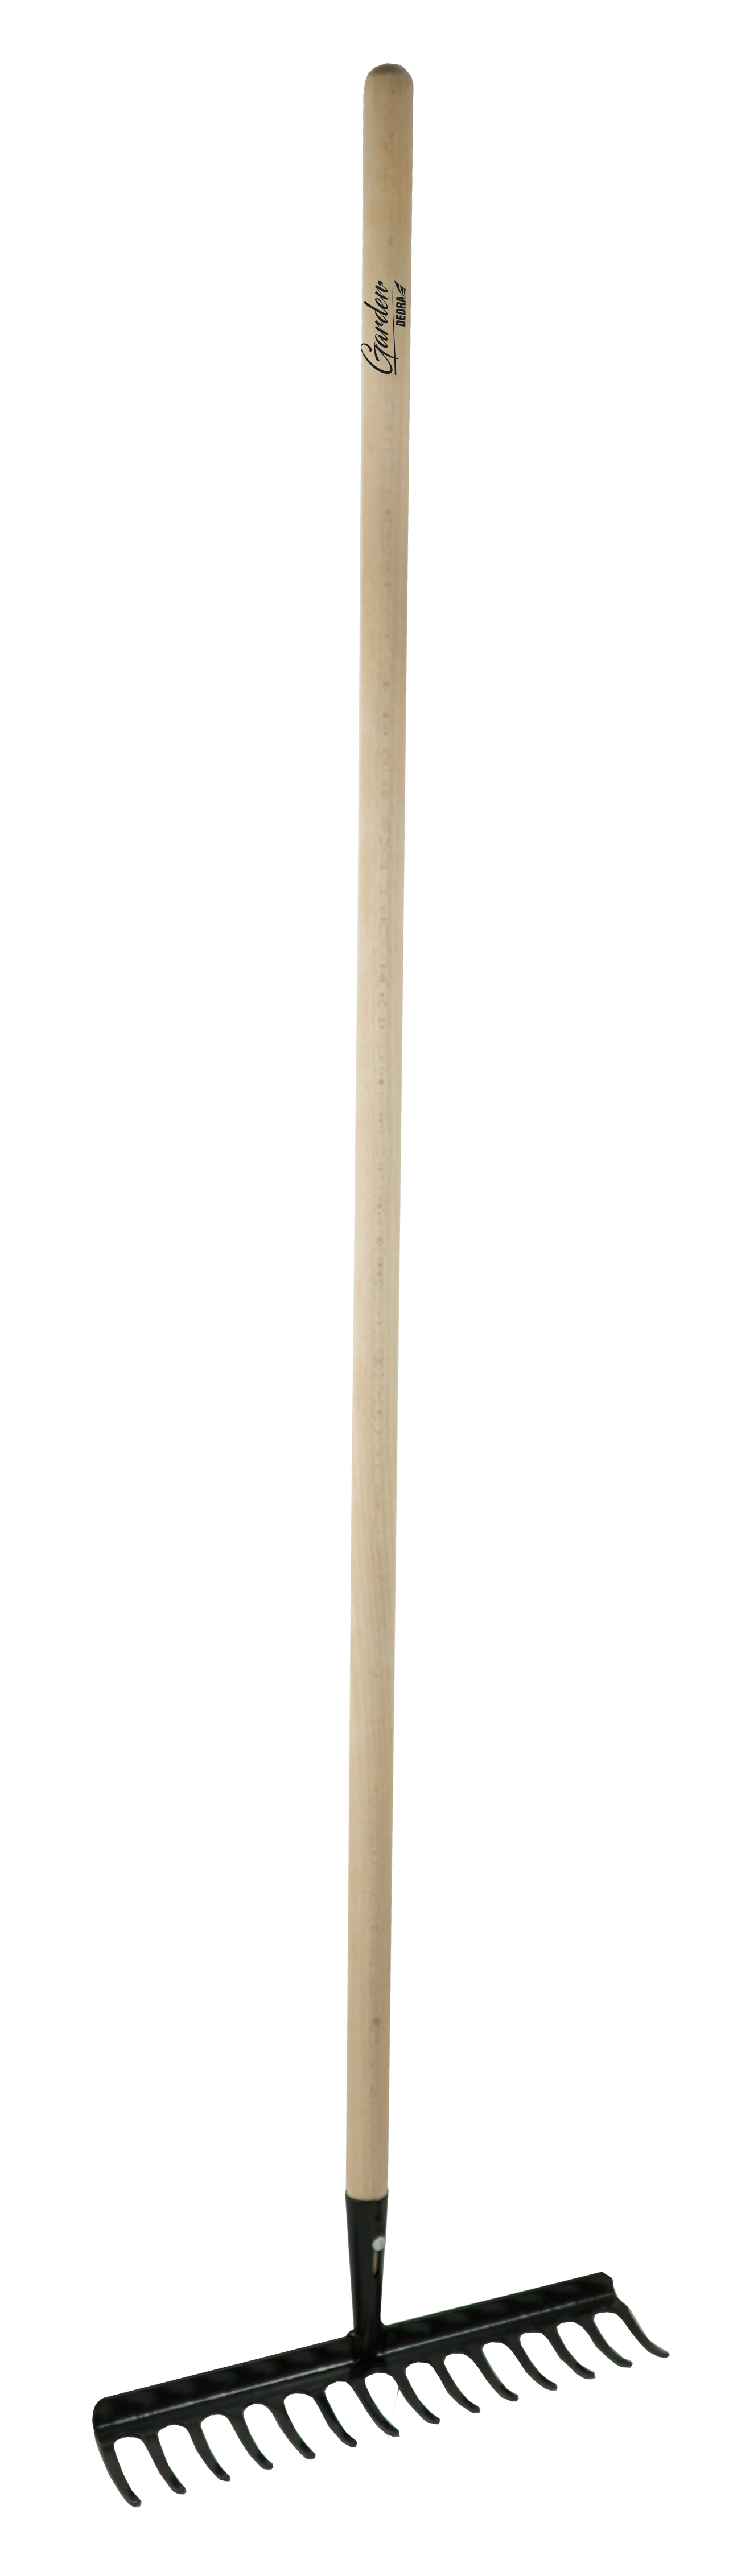 Hrablu 14-zubé vystužené s drevenou násadou, 132cm